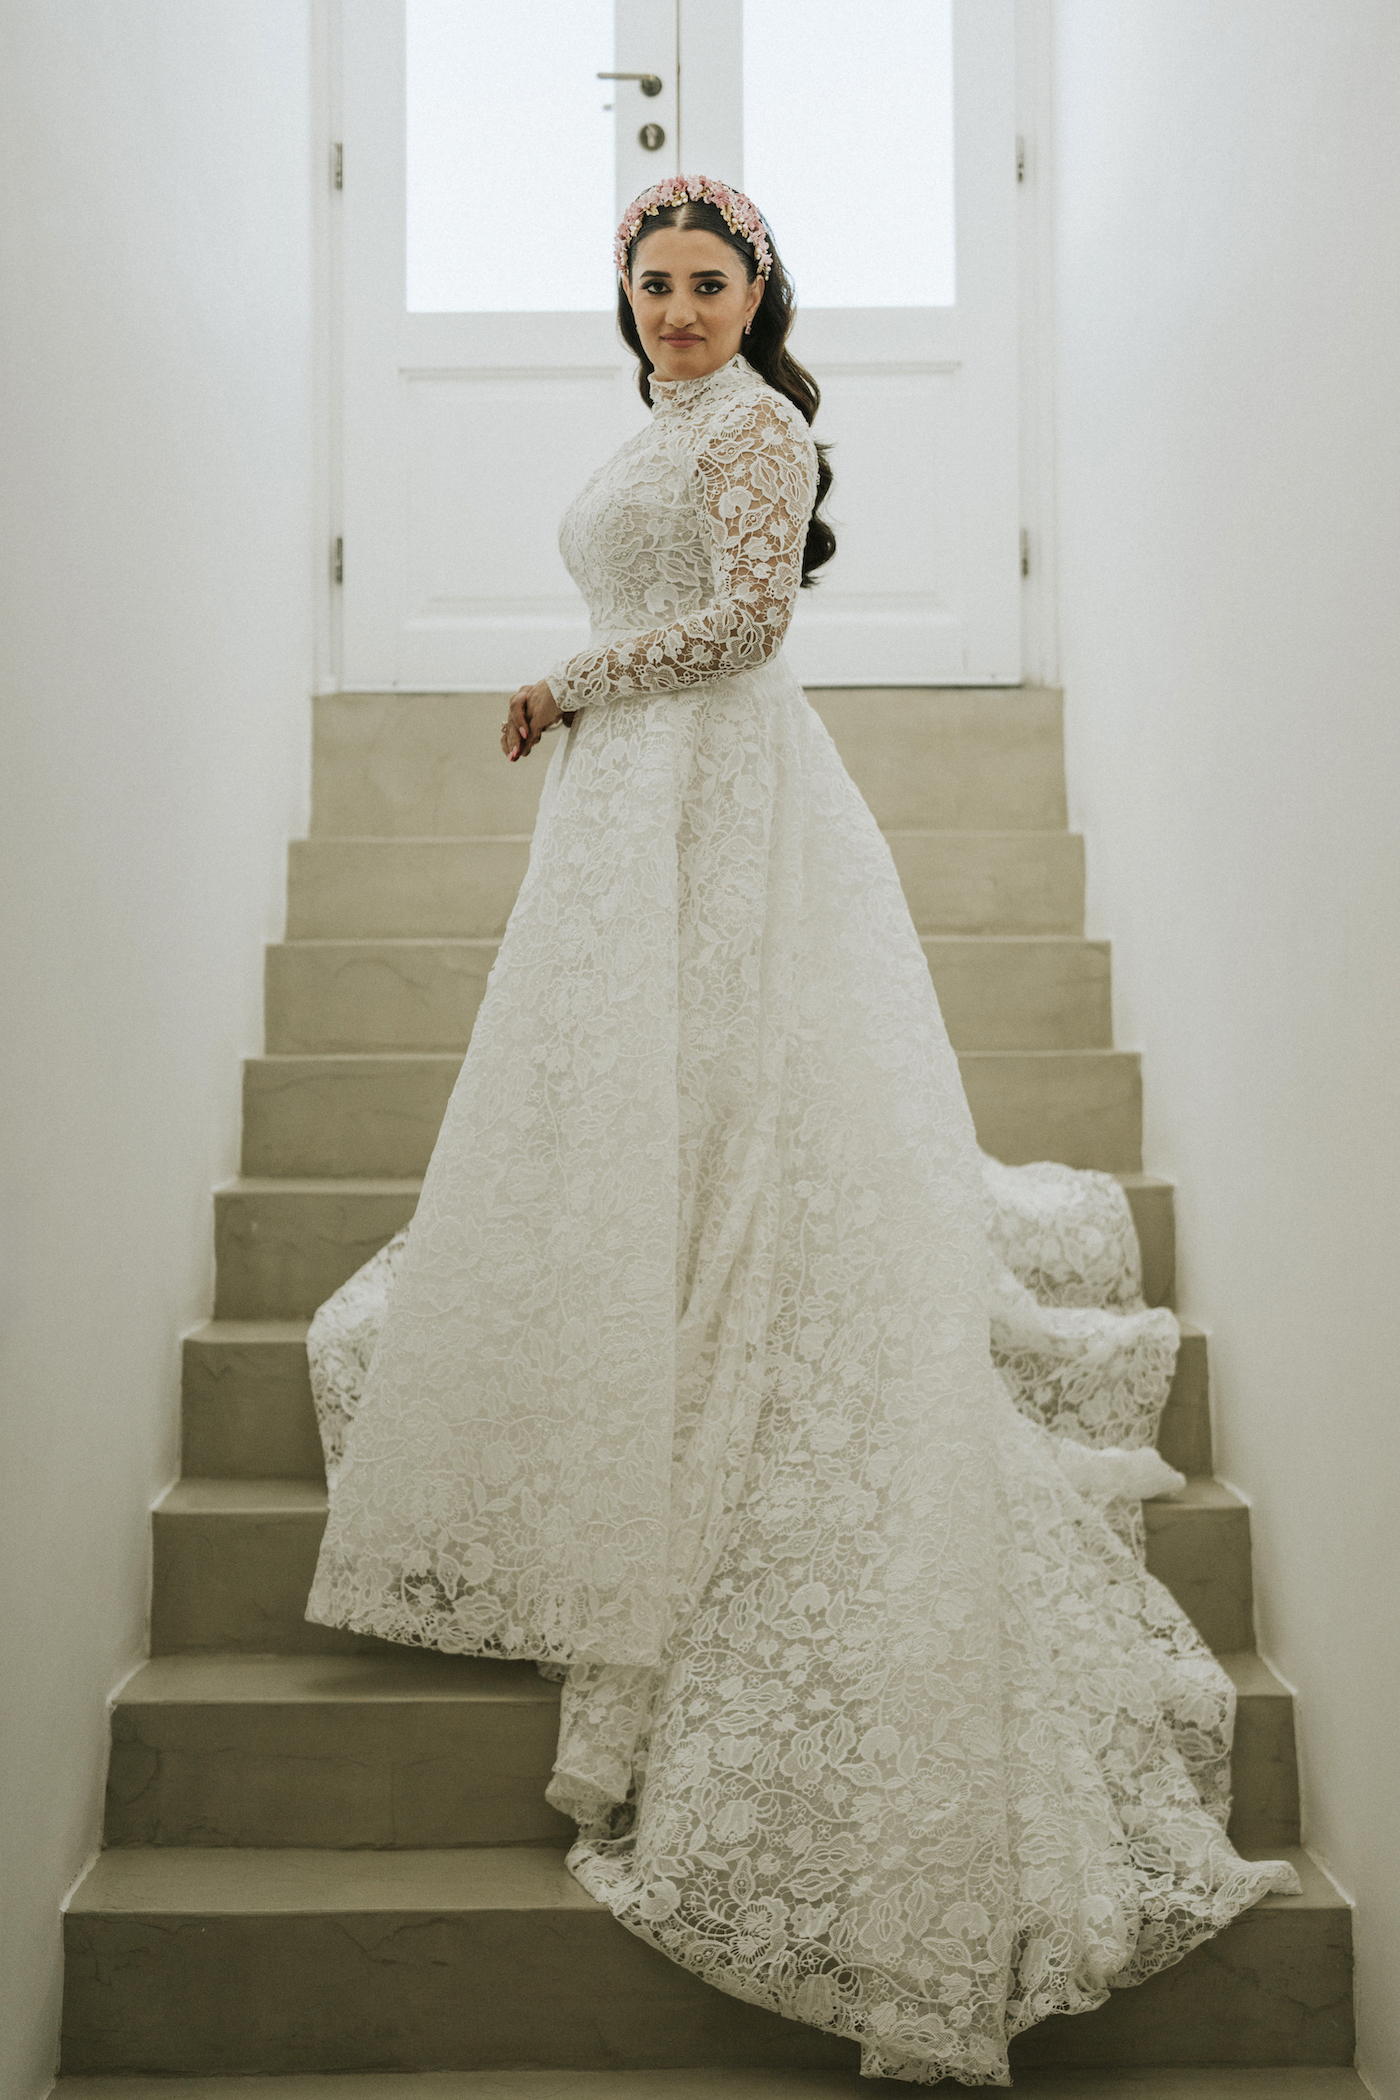 bride Leeda in lace wedding dress